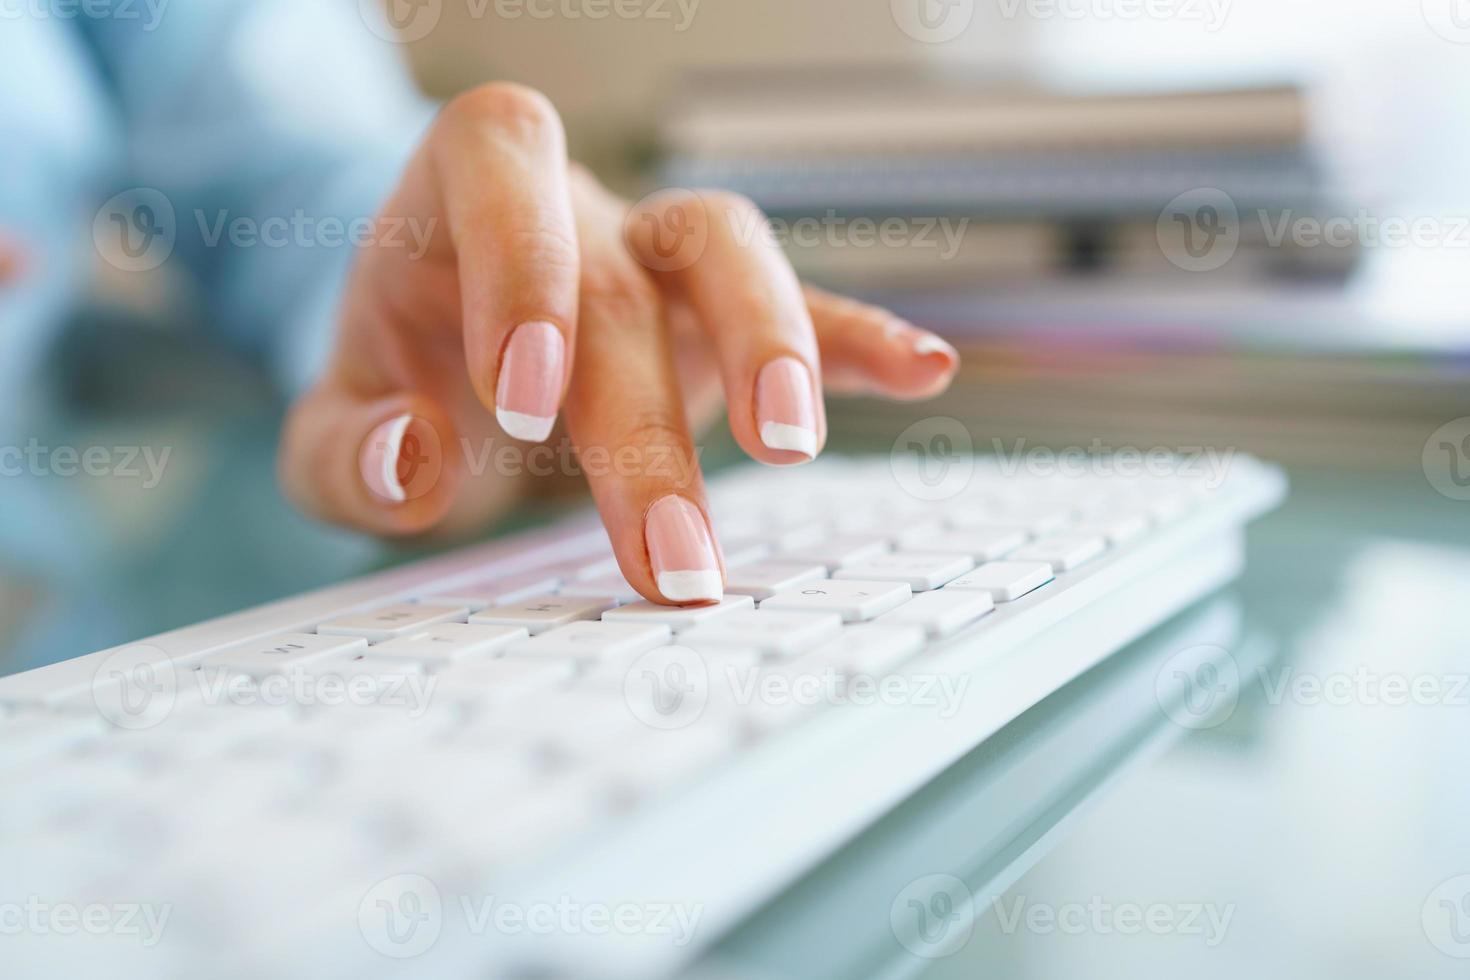 donna ufficio lavoratore digitando su il tastiera foto